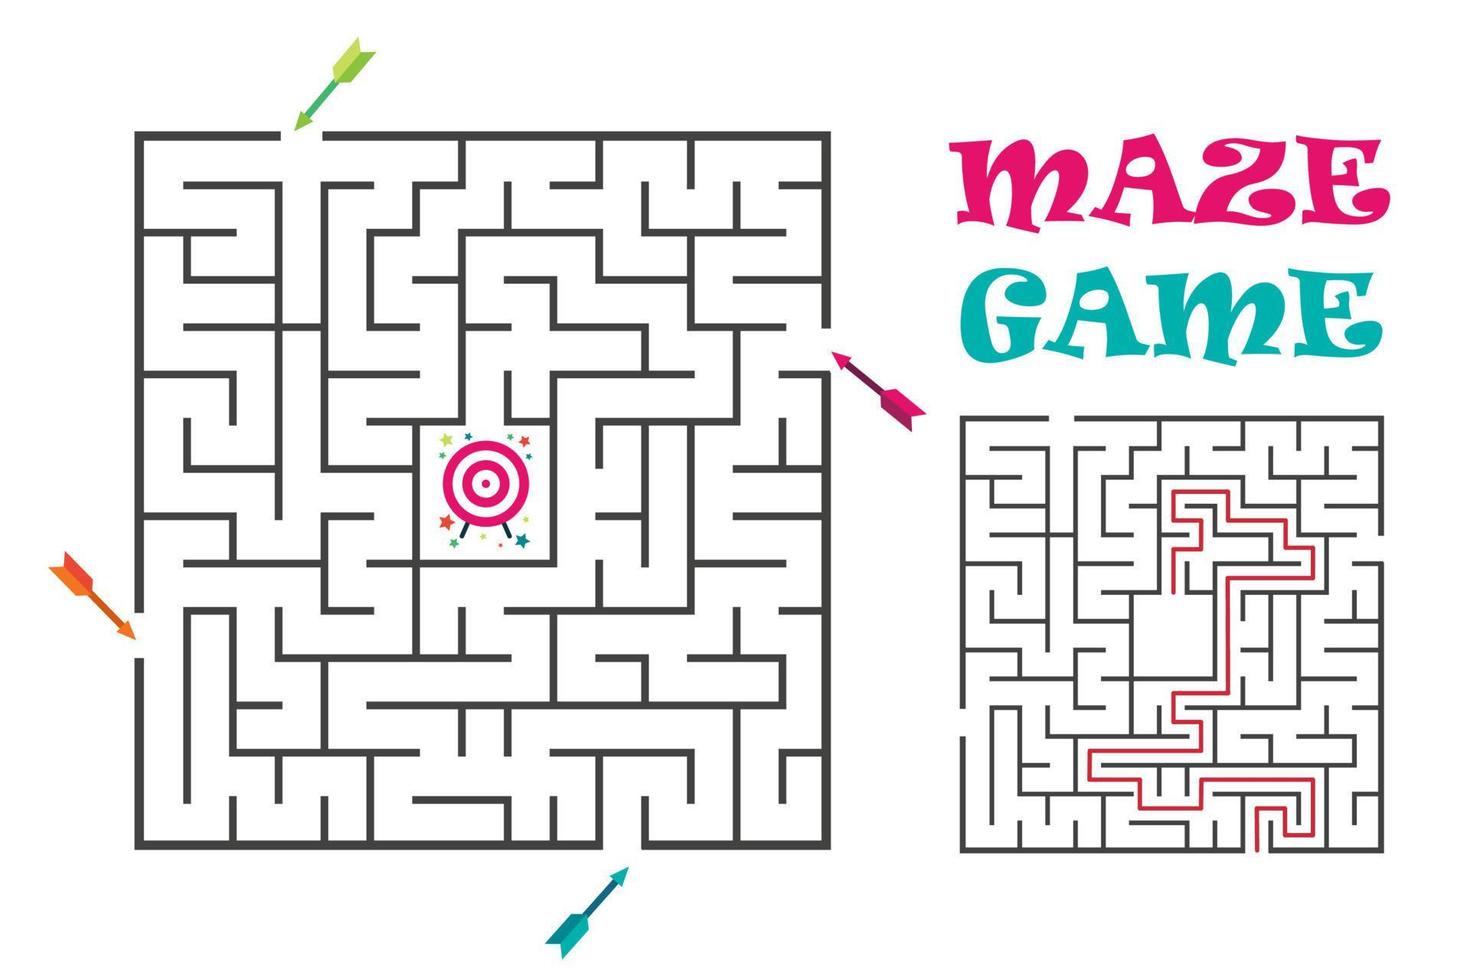 jeu de labyrinthe de labyrinthe carré pour les enfants. énigme logique avec cible et flèches. 4 entrées et une bonne voie à suivre. illustration vectorielle plate isolée sur fond blanc. vecteur